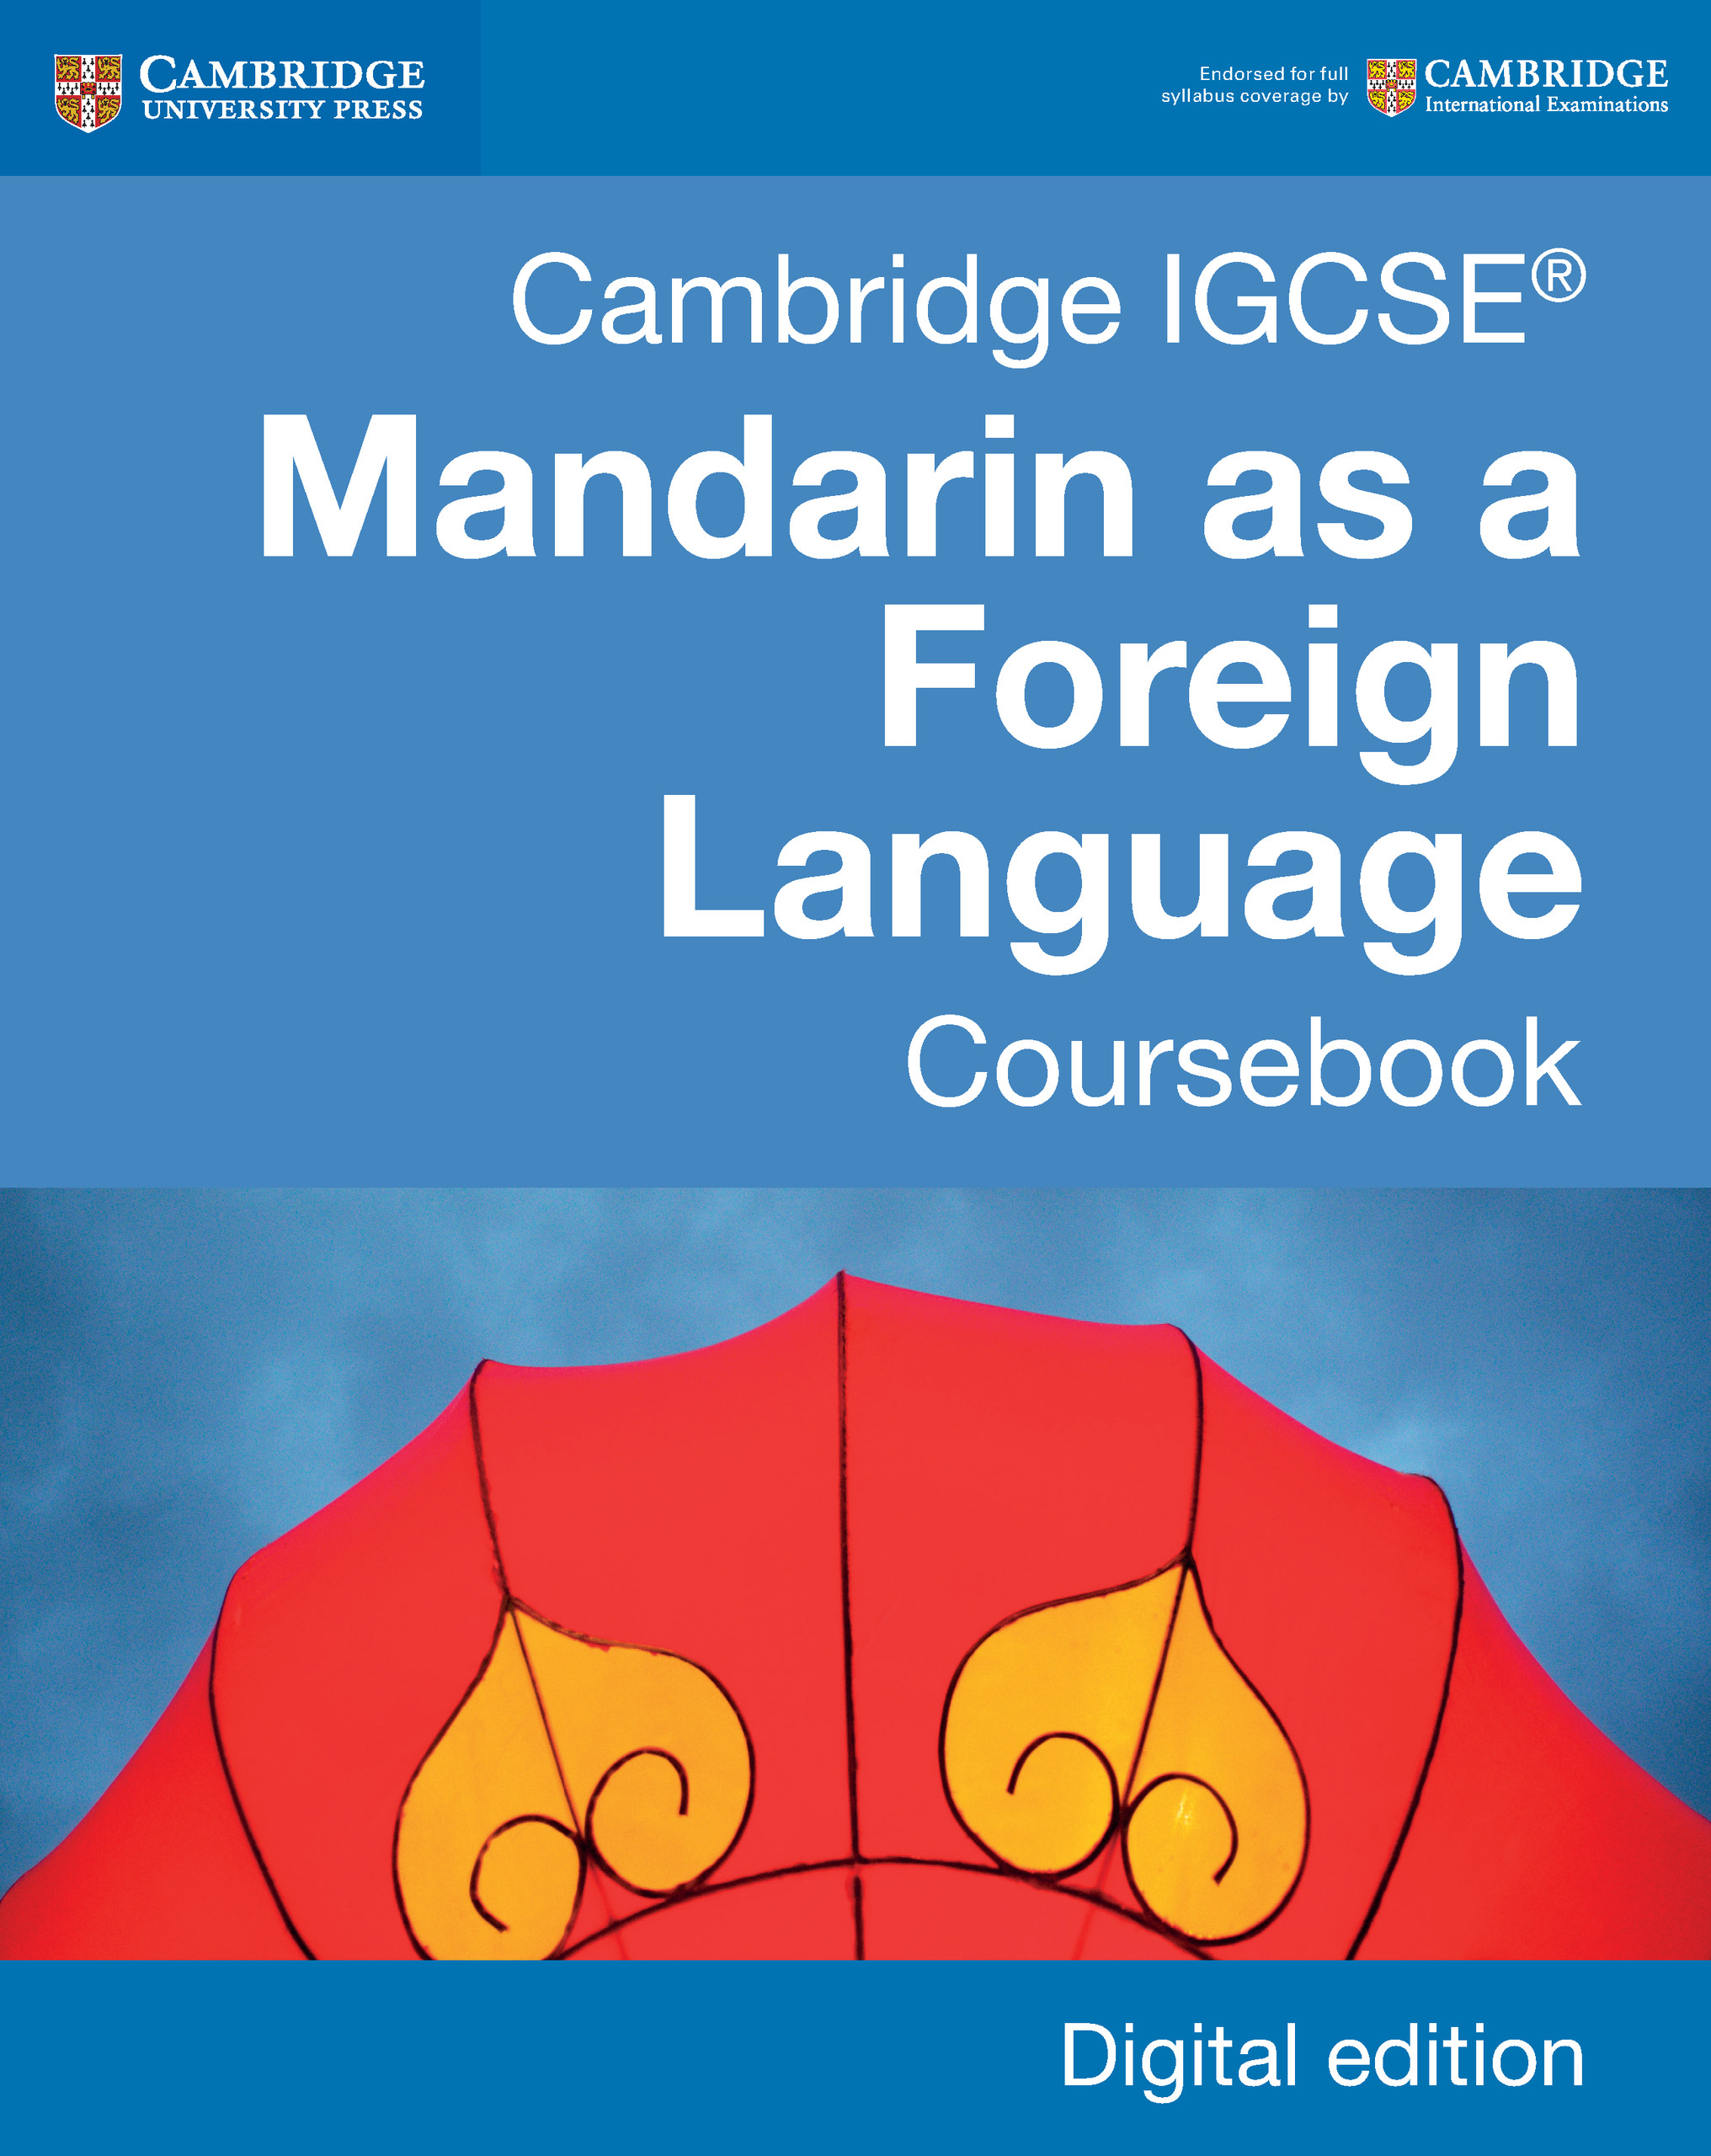 IGCSE Mandarin as a Foreign Language (IFP 2019)